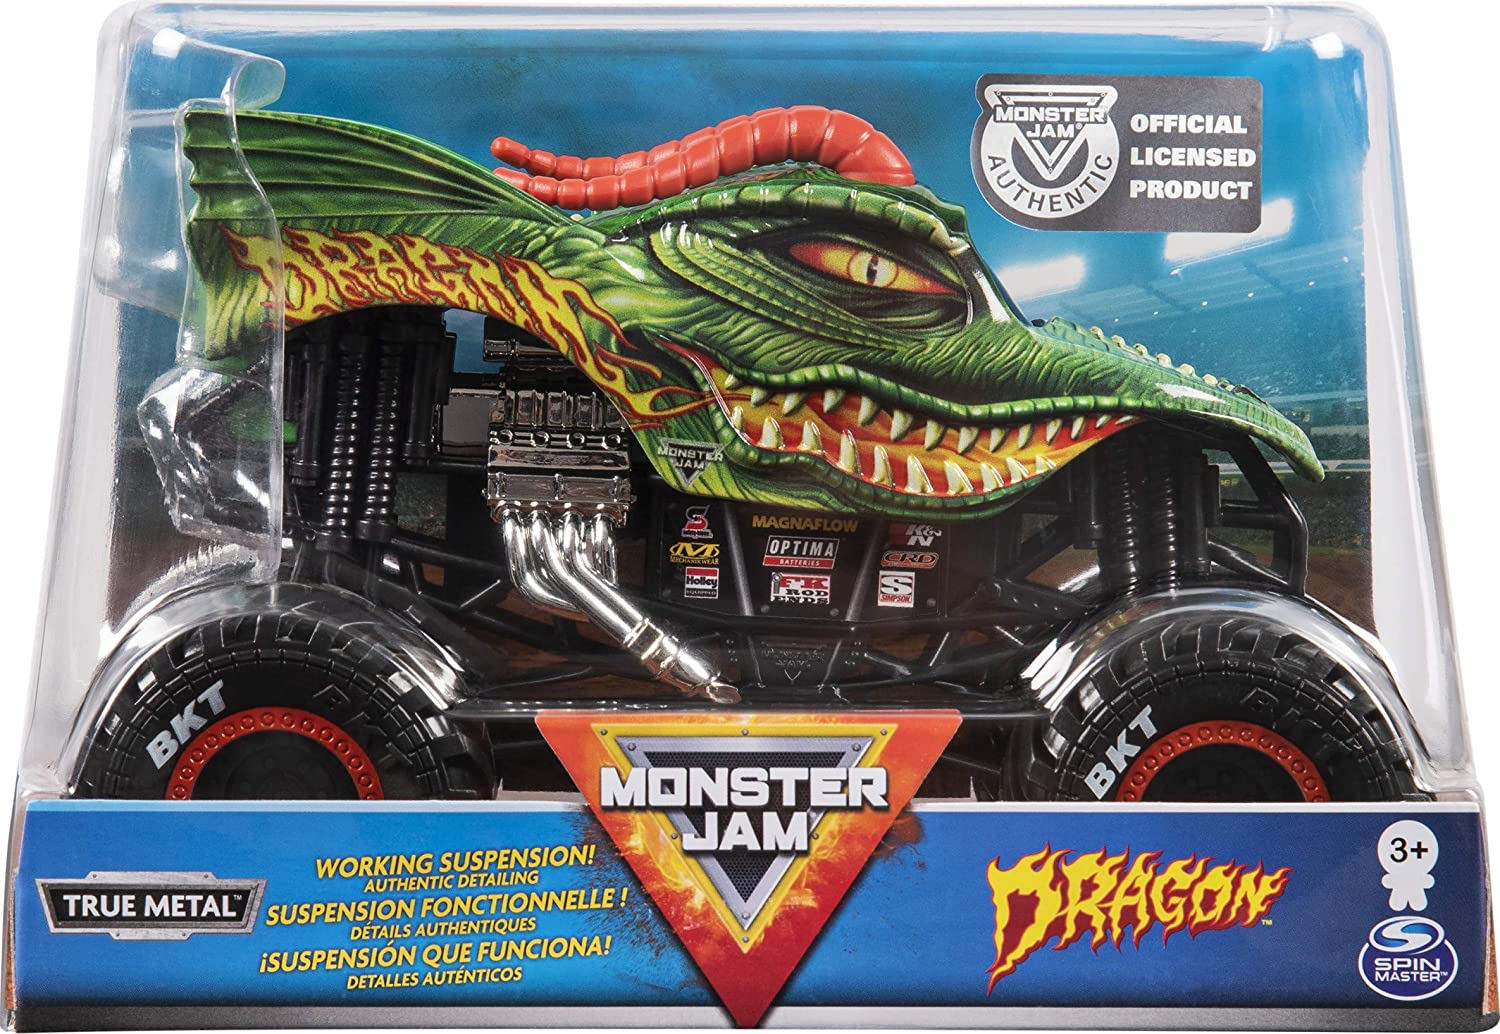 Monster Jam Macheta Metalica Scara 1 La 24 Dragon